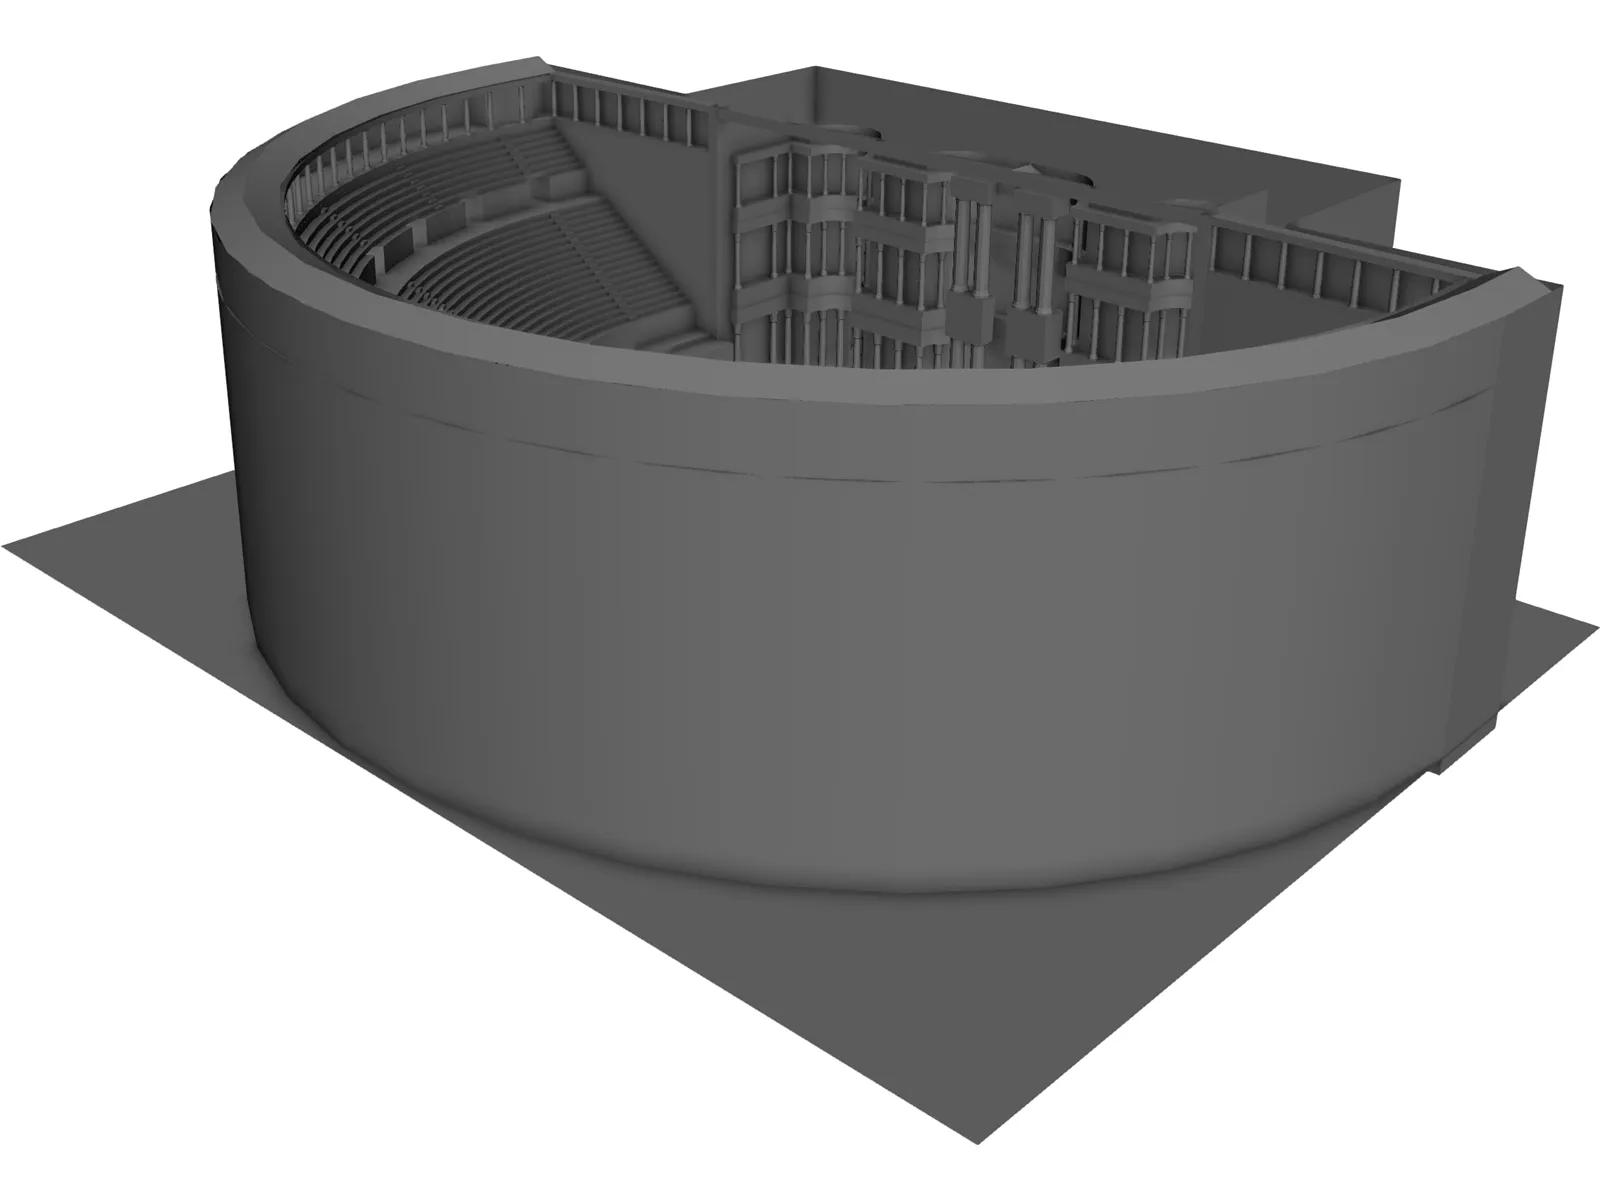 Bosra Ancient Theatre 3D Model